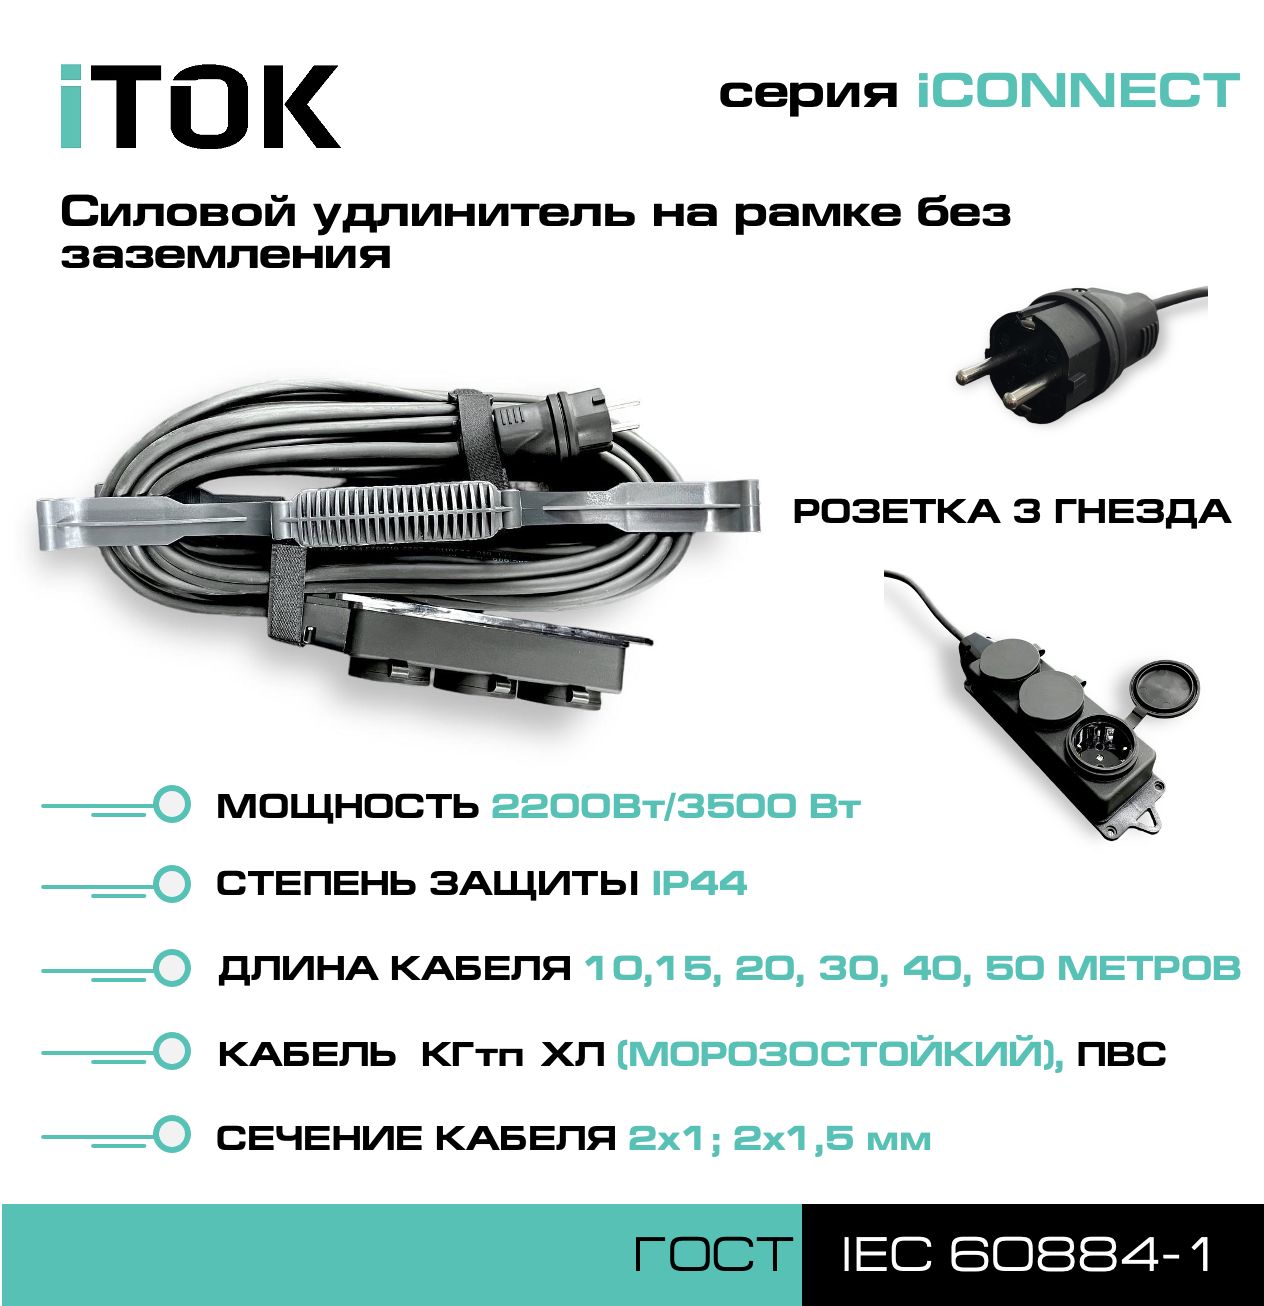 Удлинитель на рамке без земли серии iTOK iCONNECT КГтп-ХЛ 2х1,5 мм 3 гнезда IP44 10 м зарядные гнезда usb в виде клавиши marina 3 1 а more 10264236